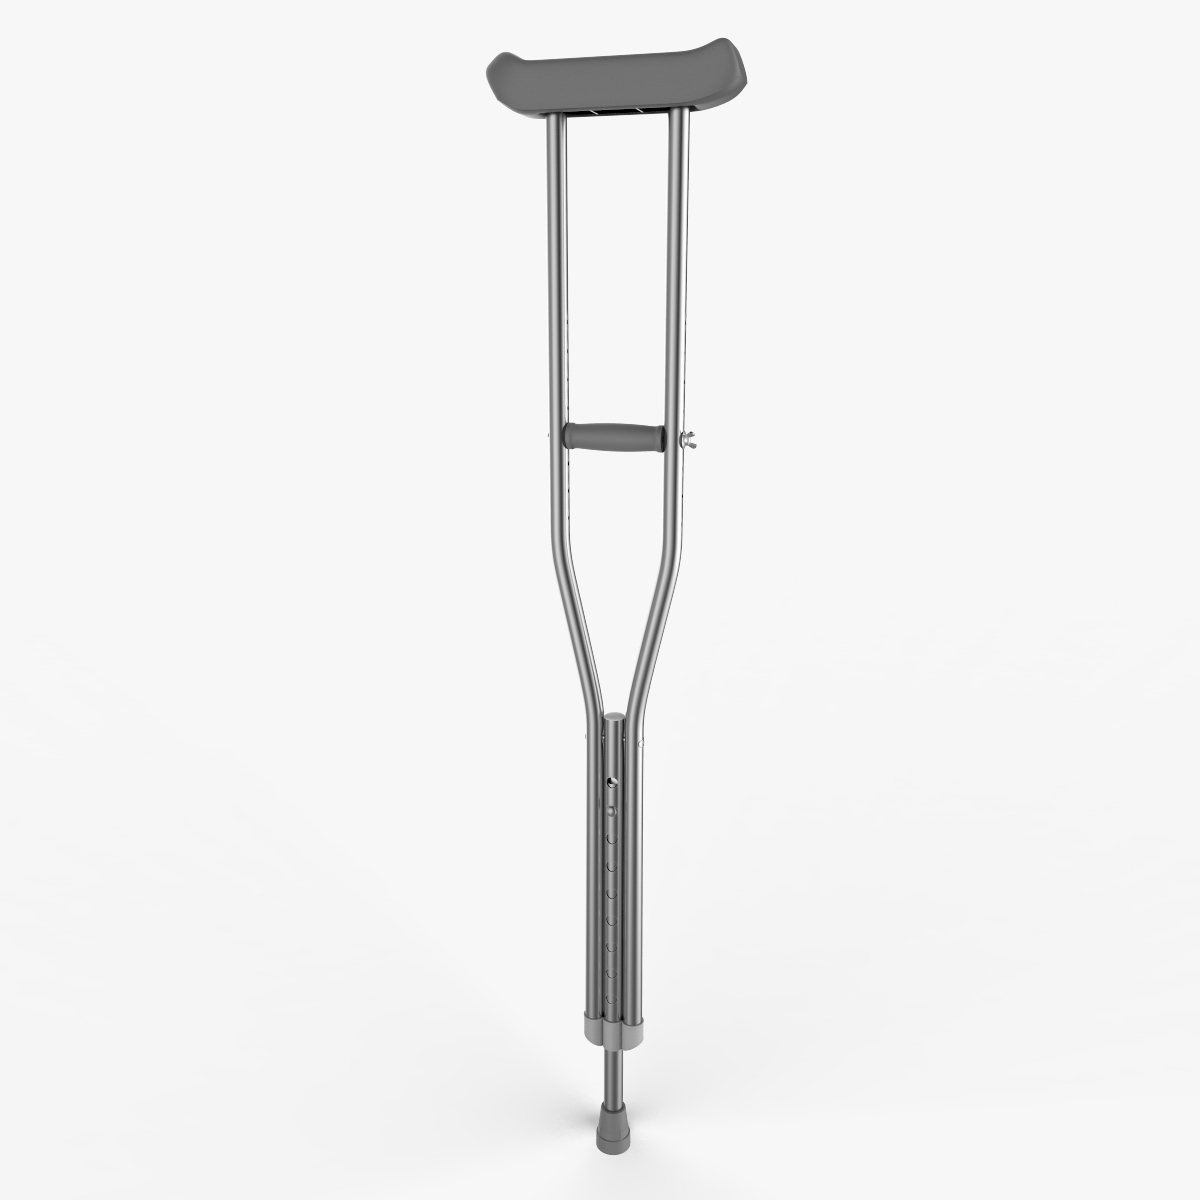 axillary crutch cane model